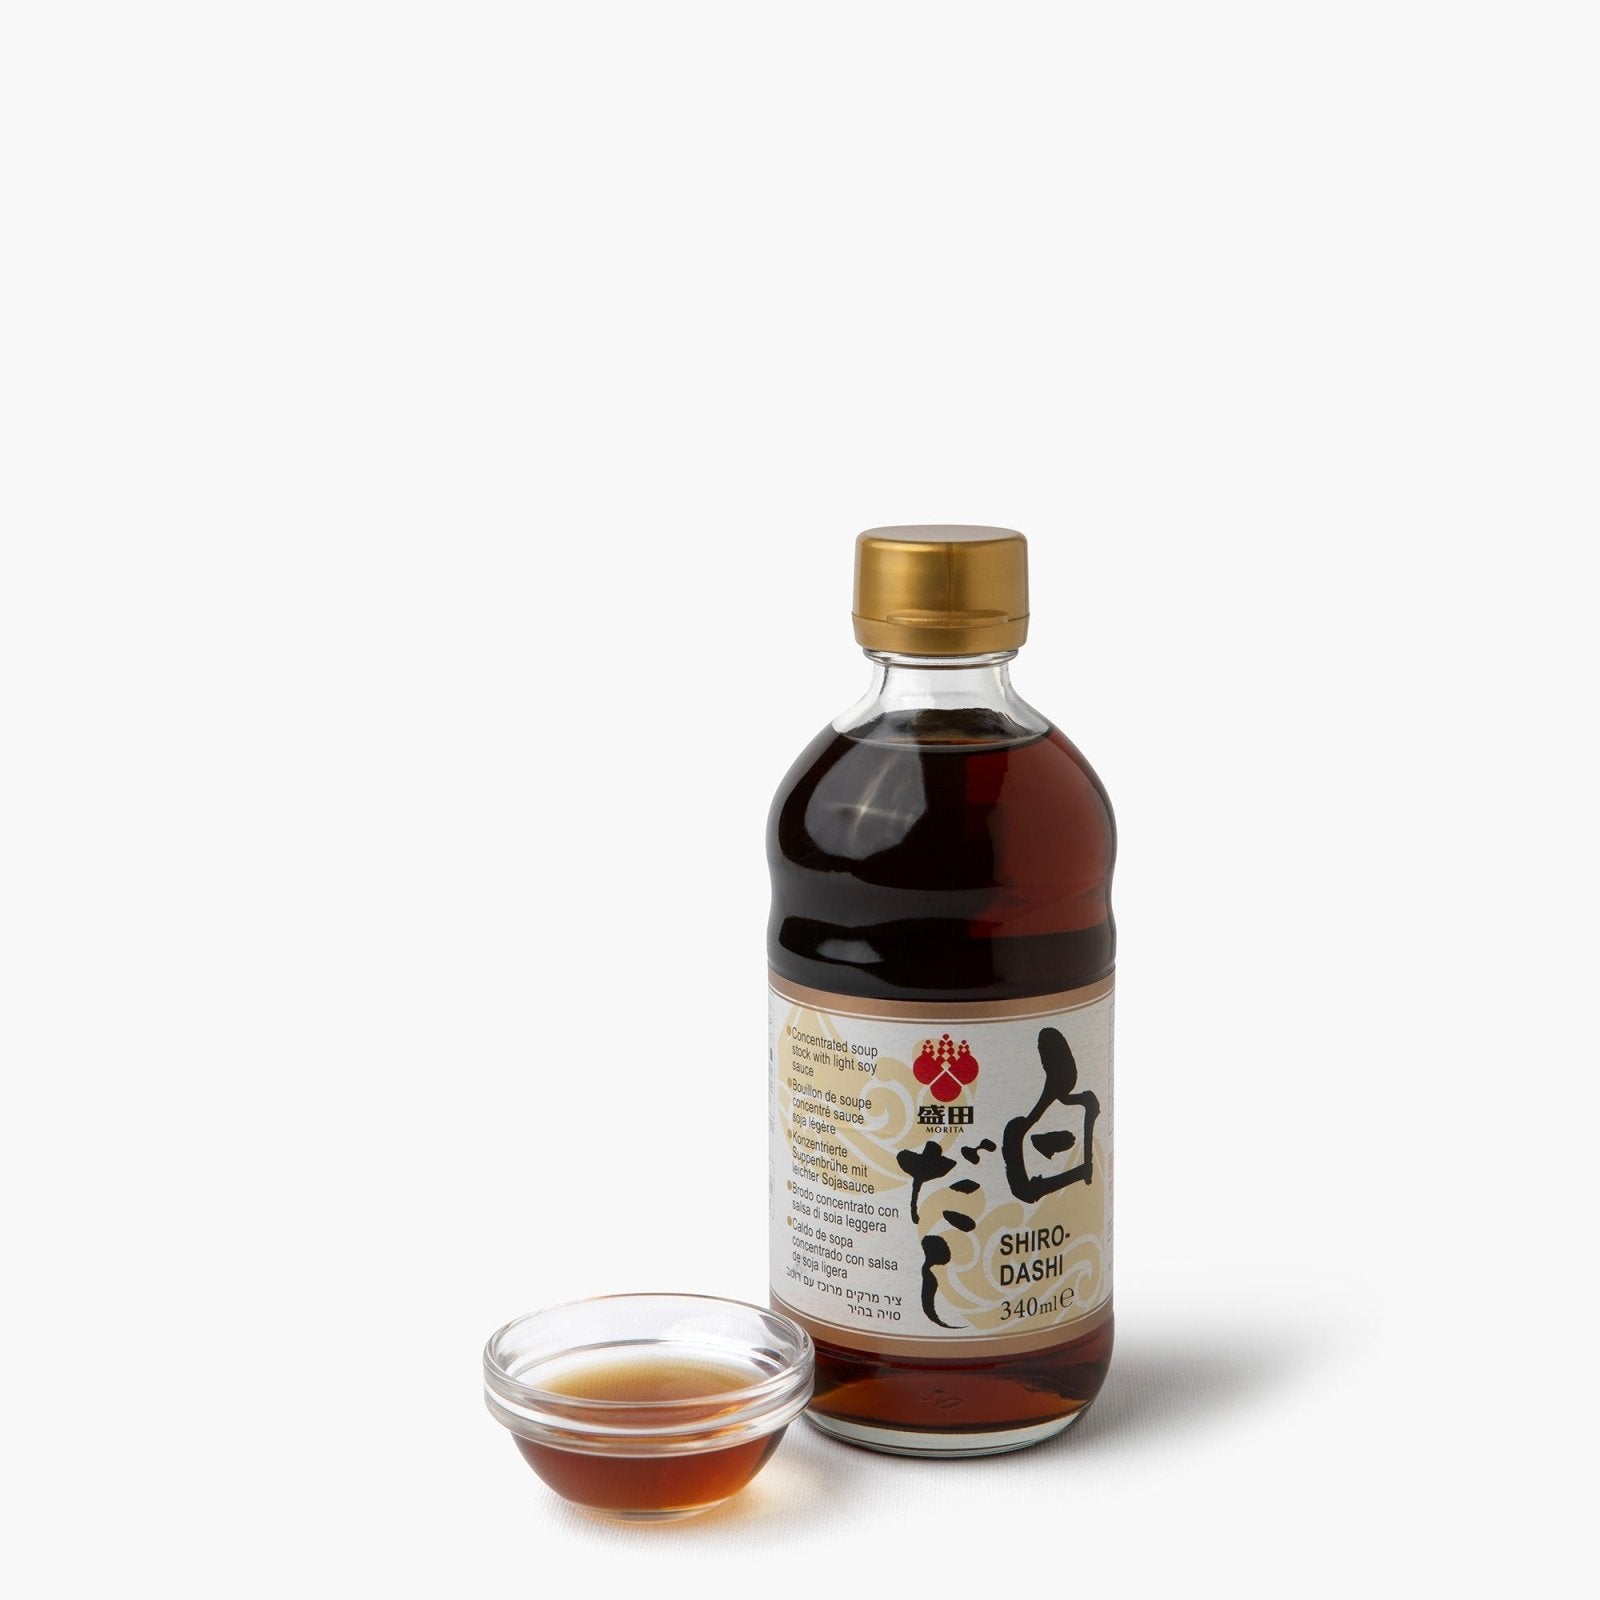 Dashi liquide concentré (bouillon japonais) Yagisawa 360ml – Ima japon